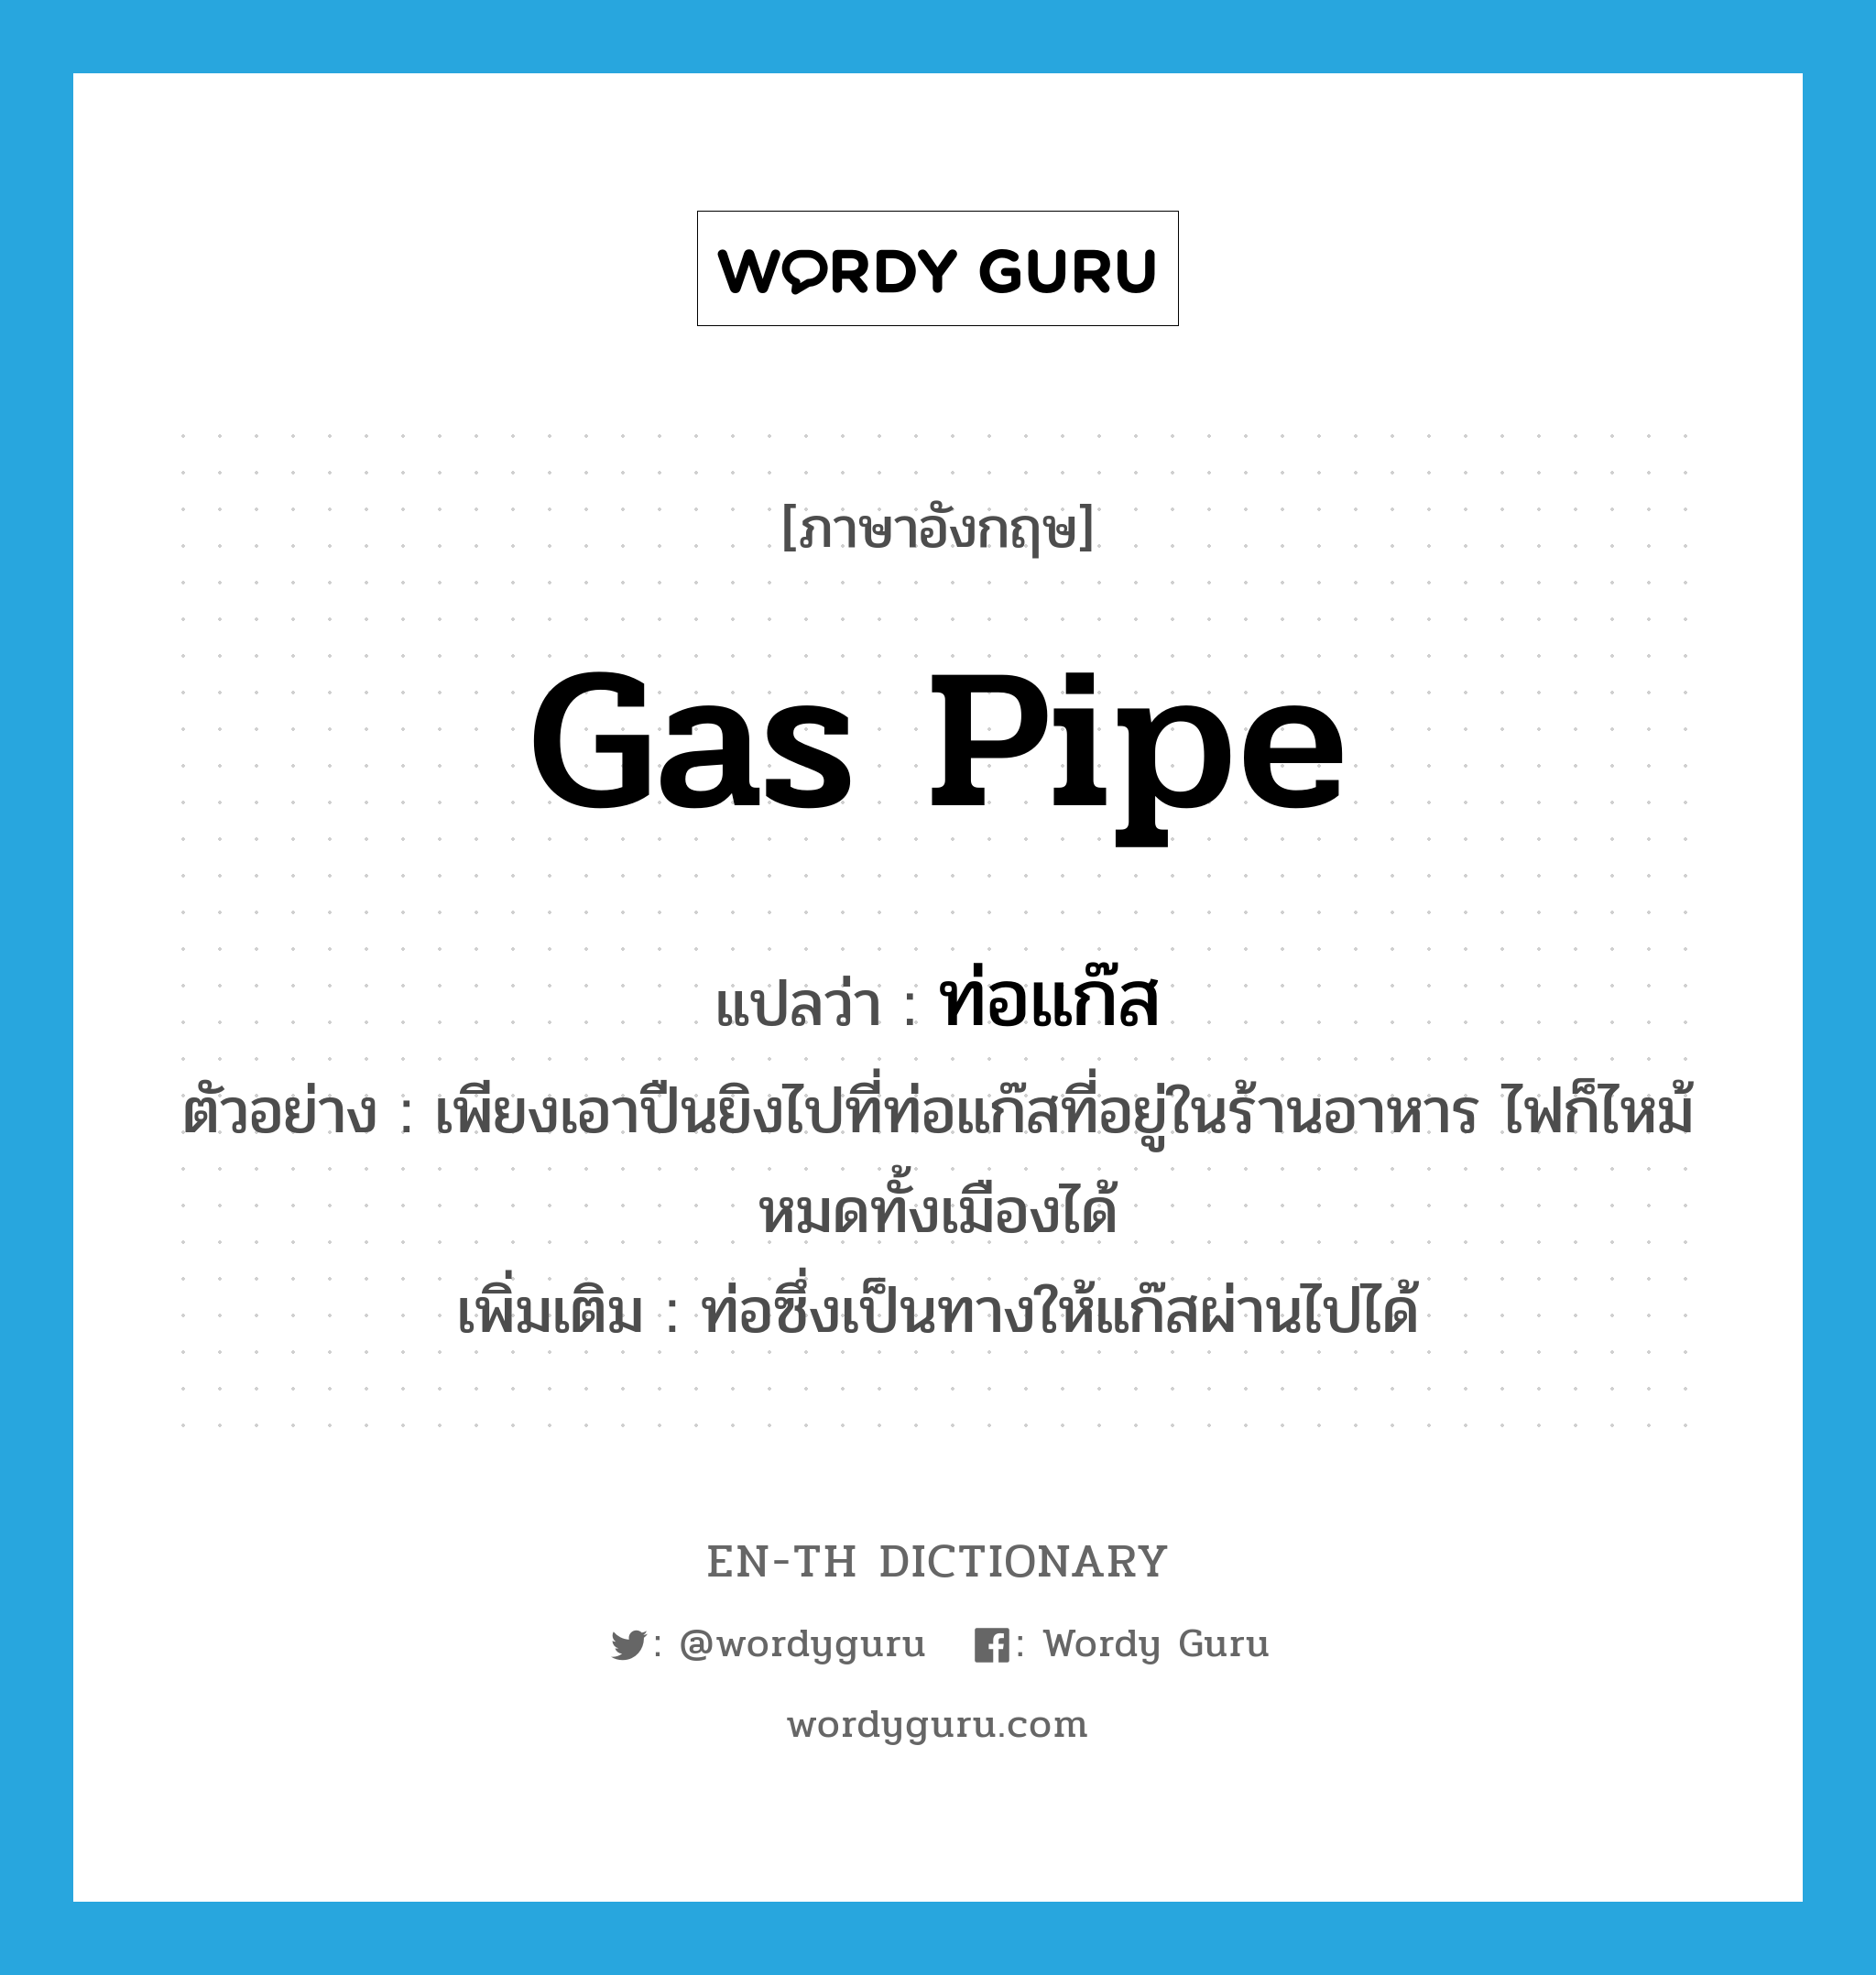 gas pipe แปลว่า?, คำศัพท์ภาษาอังกฤษ gas pipe แปลว่า ท่อแก๊ส ประเภท N ตัวอย่าง เพียงเอาปืนยิงไปที่ท่อแก๊สที่อยู่ในร้านอาหาร ไฟก็ไหม้หมดทั้งเมืองได้ เพิ่มเติม ท่อซึ่งเป็นทางให้แก๊สผ่านไปได้ หมวด N